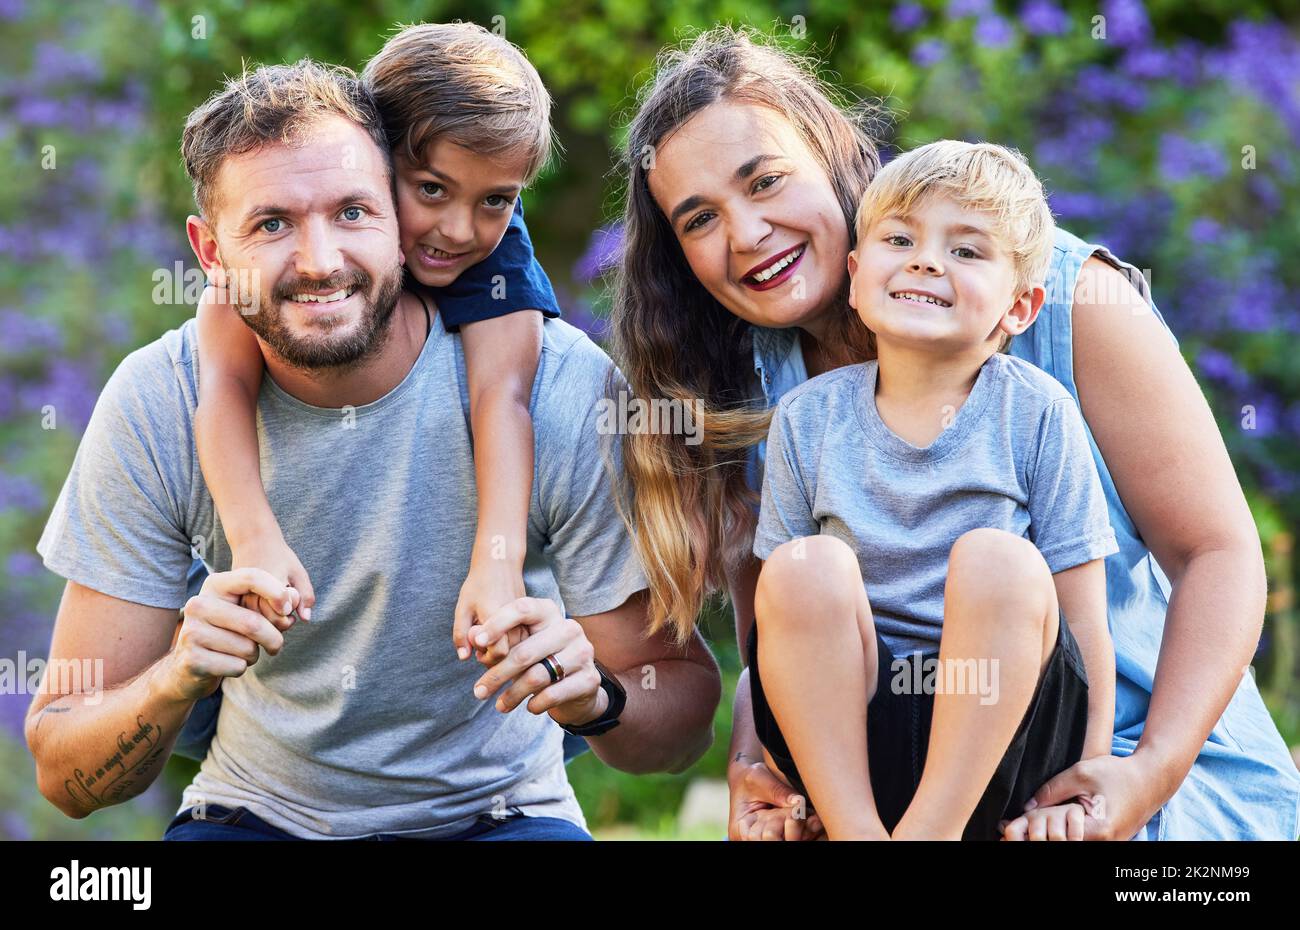 Pensavi che non cercavo, stavo imparando ad amare. Ritratto di una bella famiglia con i loro figli sulle spalle in un parco. Foto Stock